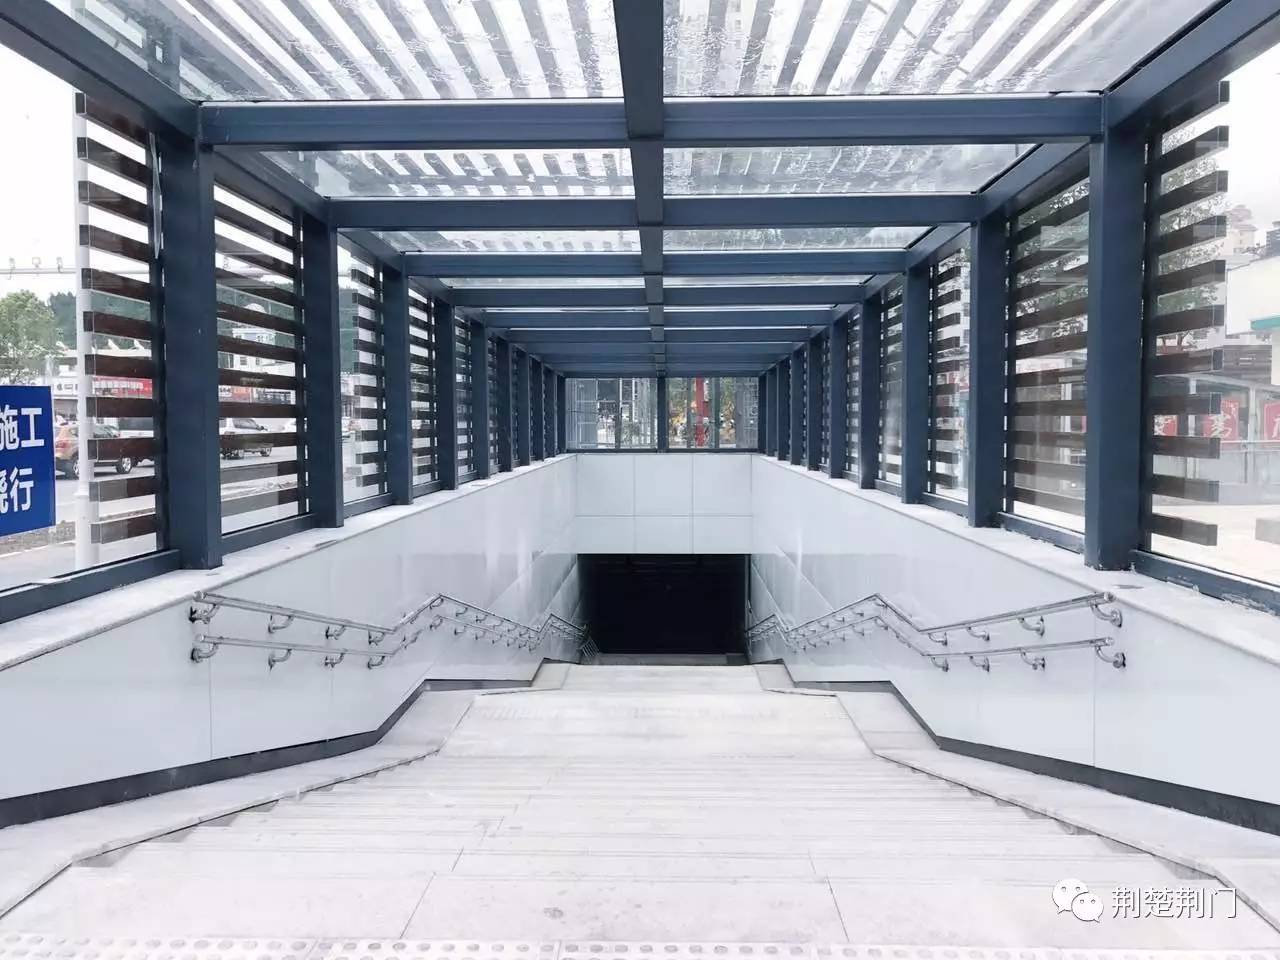 现场实拍!荆门最大的地下人行通道竟然如此高大上,29日正式开放通行!